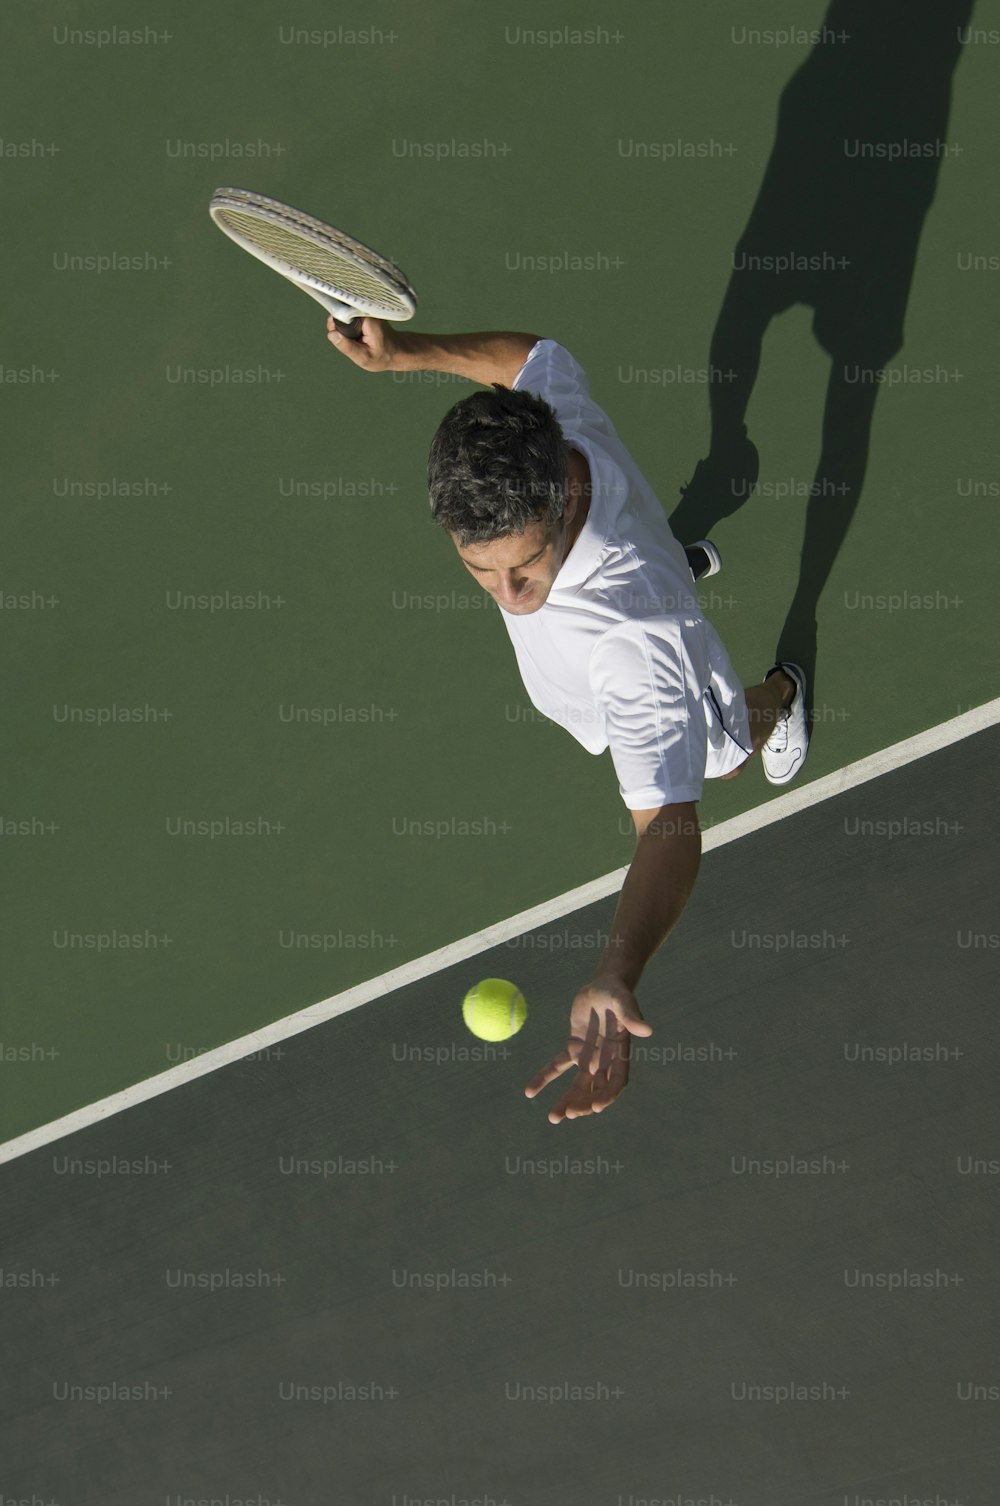 Un hombre con camisa blanca y pantalones cortos jugando un partido de tenis